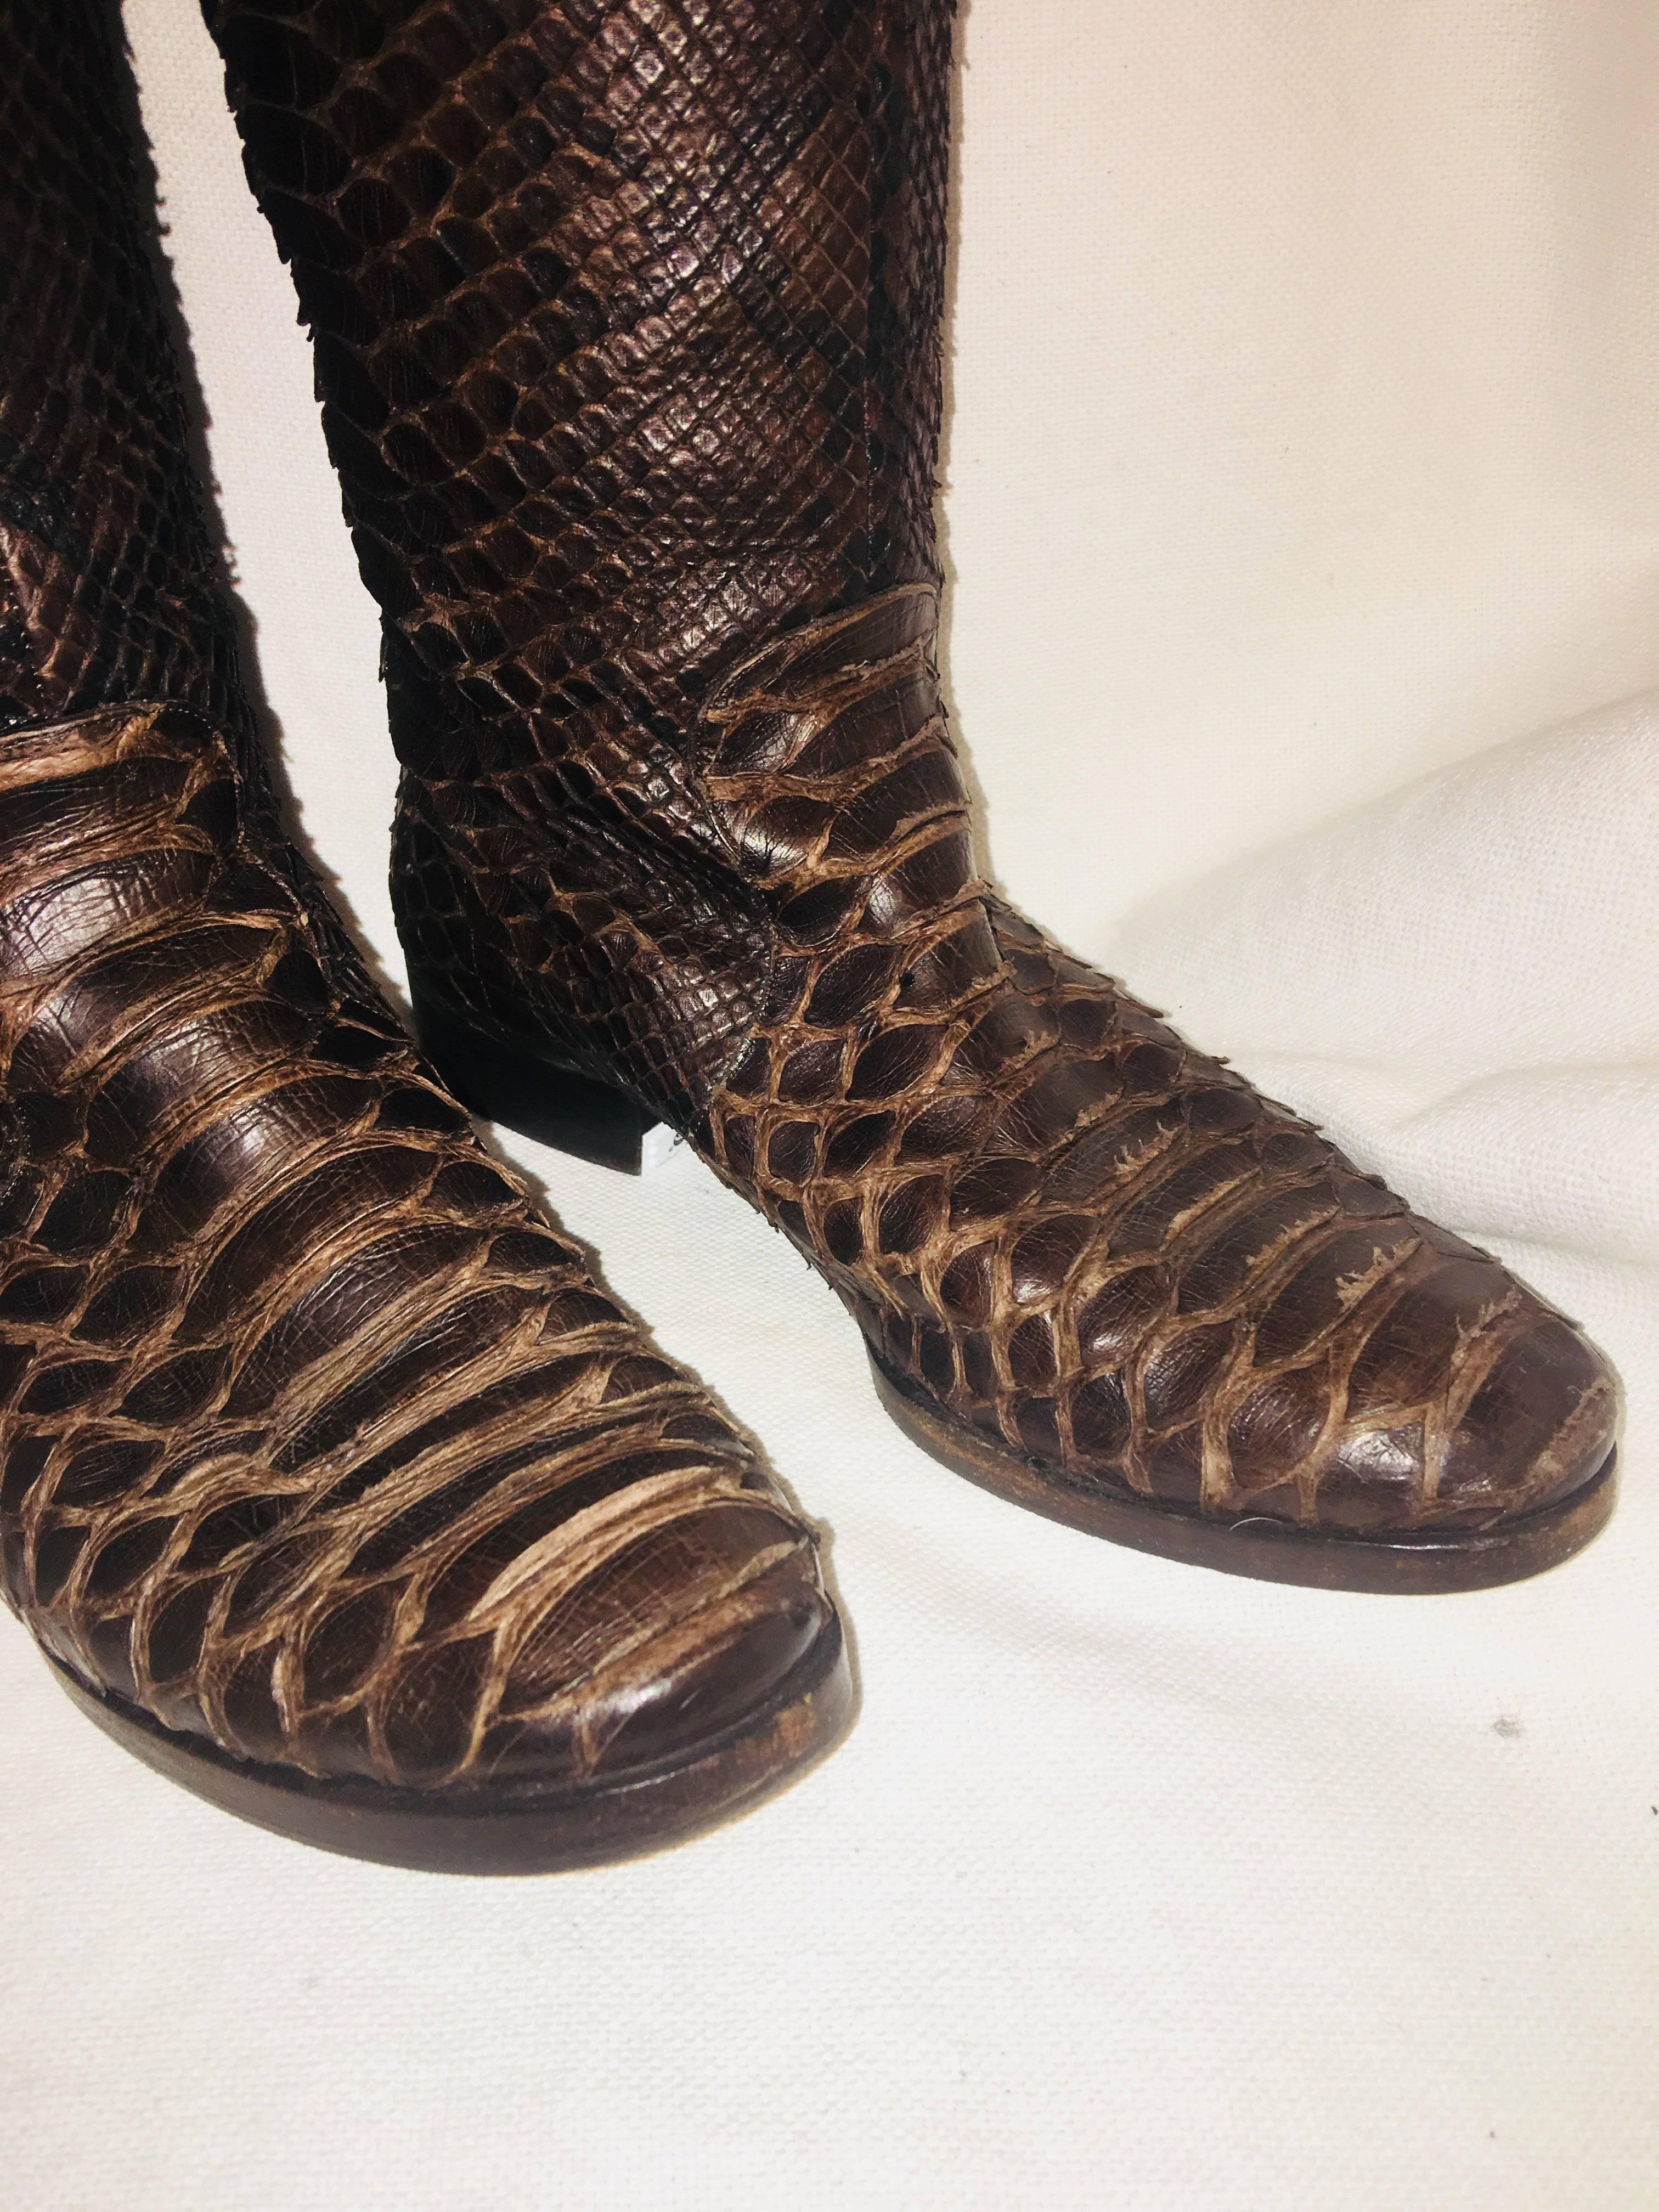 michael kors python shoes